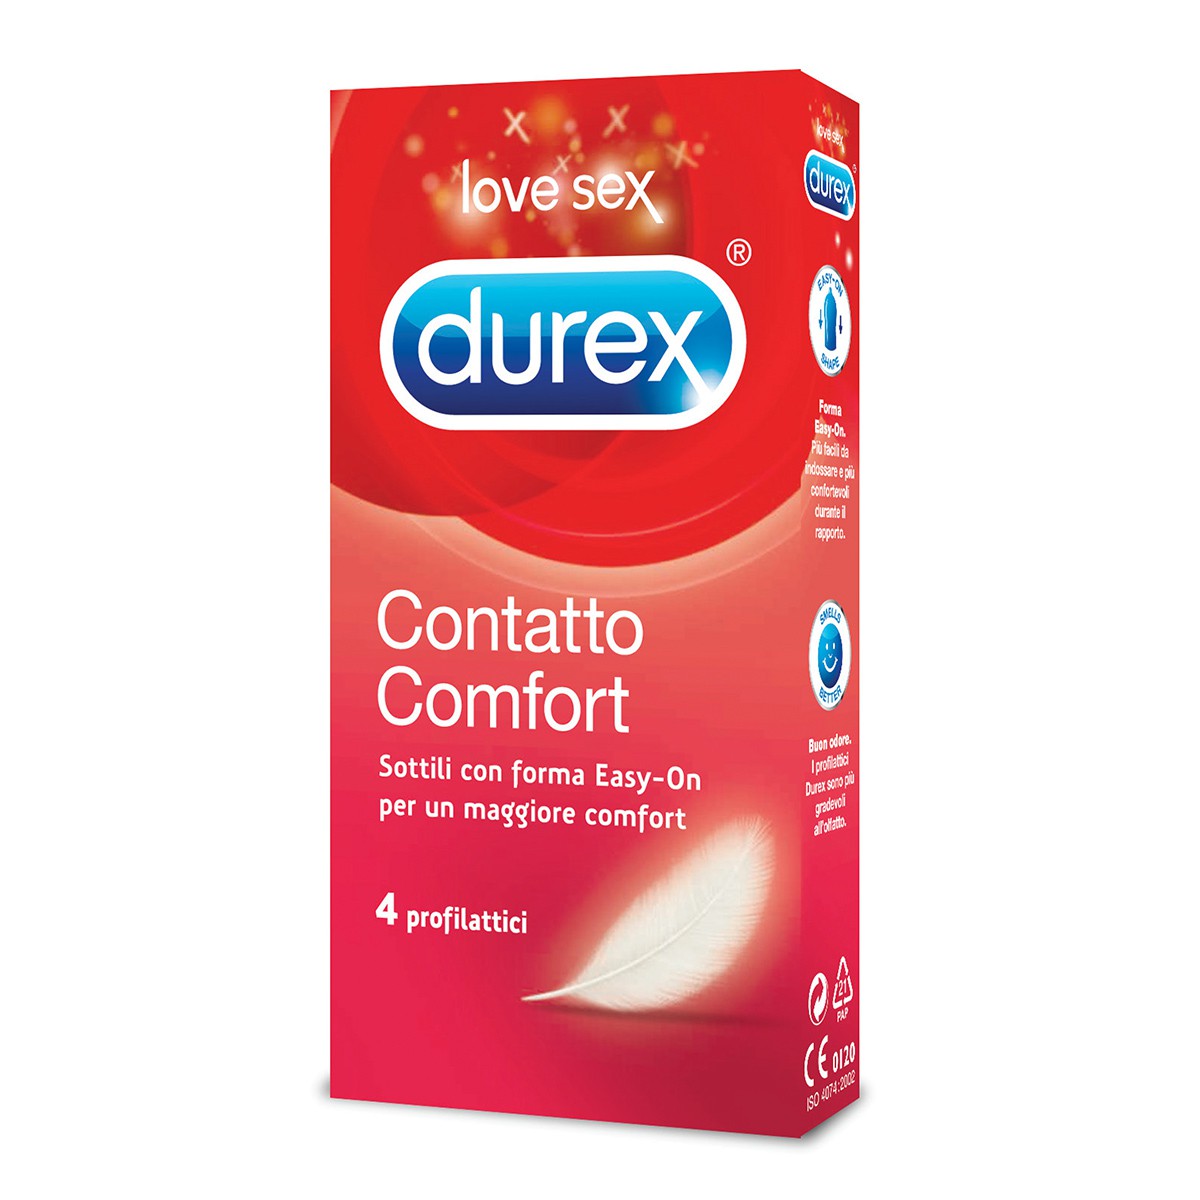 DUREX 12 preservativi contatto comfort profilattici molto lubrificati con forma "Easy-on"